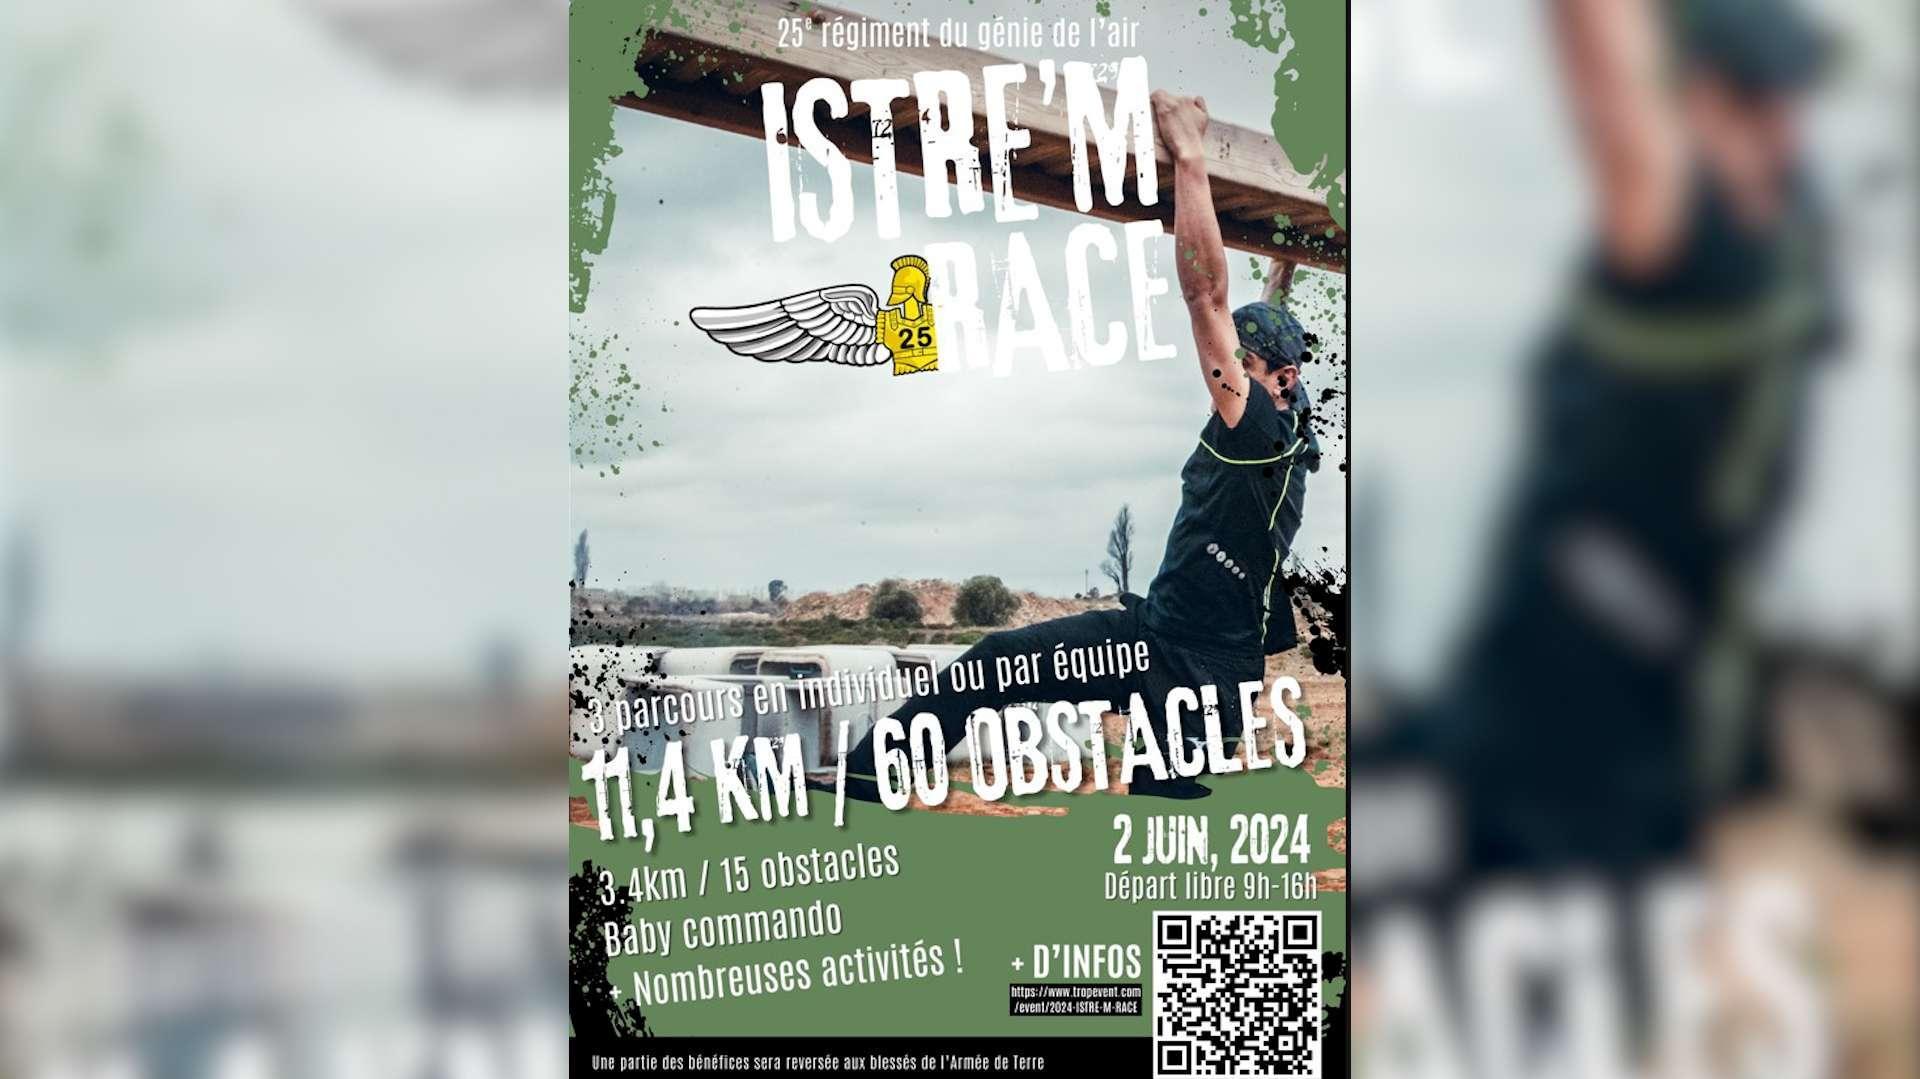 Istre'm Race : une course d'obstacles organisée par le 25e Régiment du Génie de l'Air